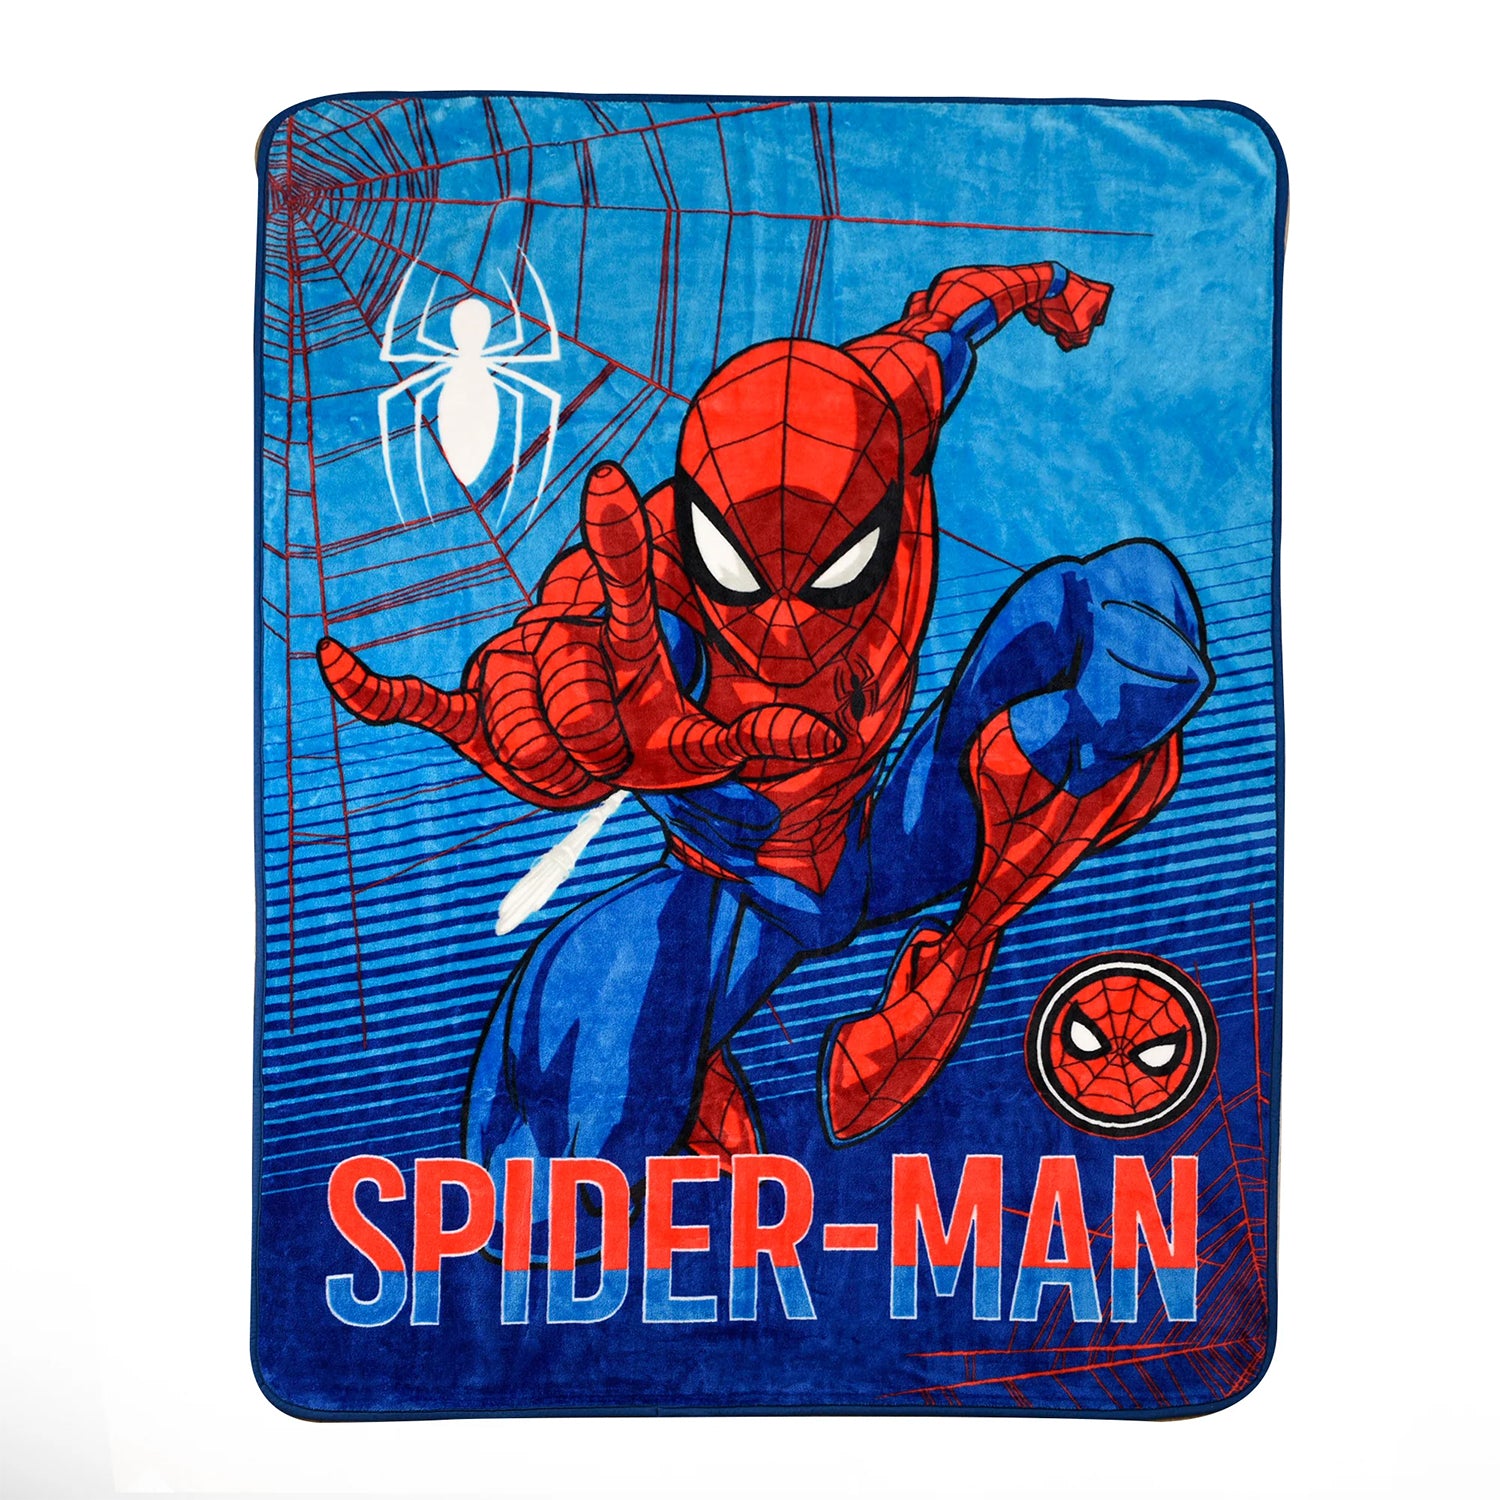 Marvel Spider-Man Velour High Pile Blanket, 59" x 78"